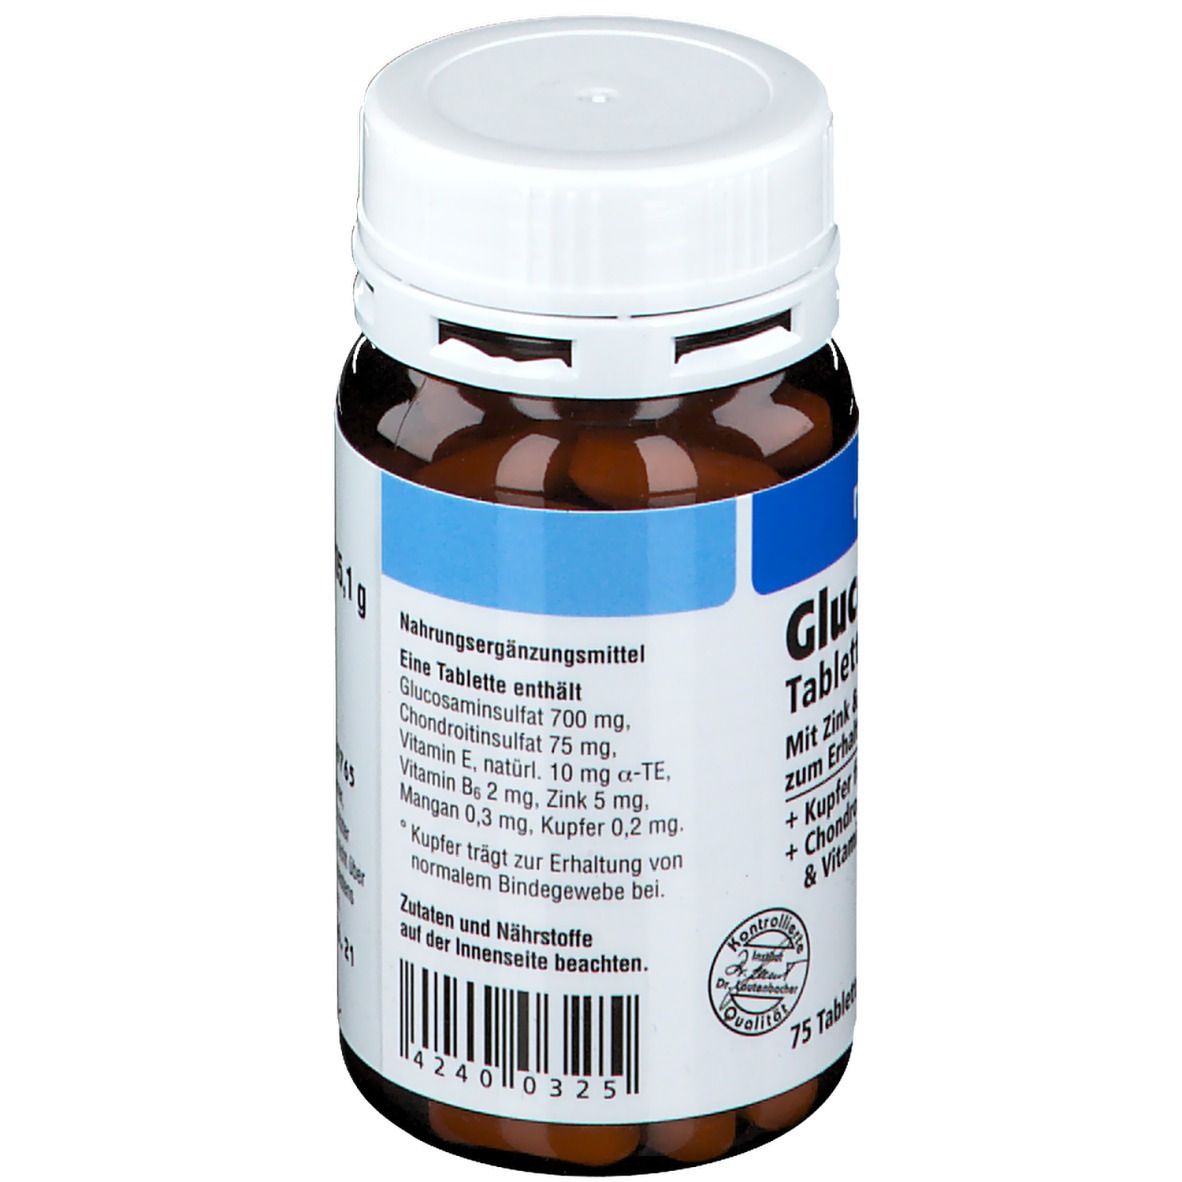 RevoMed® Glucosamin Tabletten plus